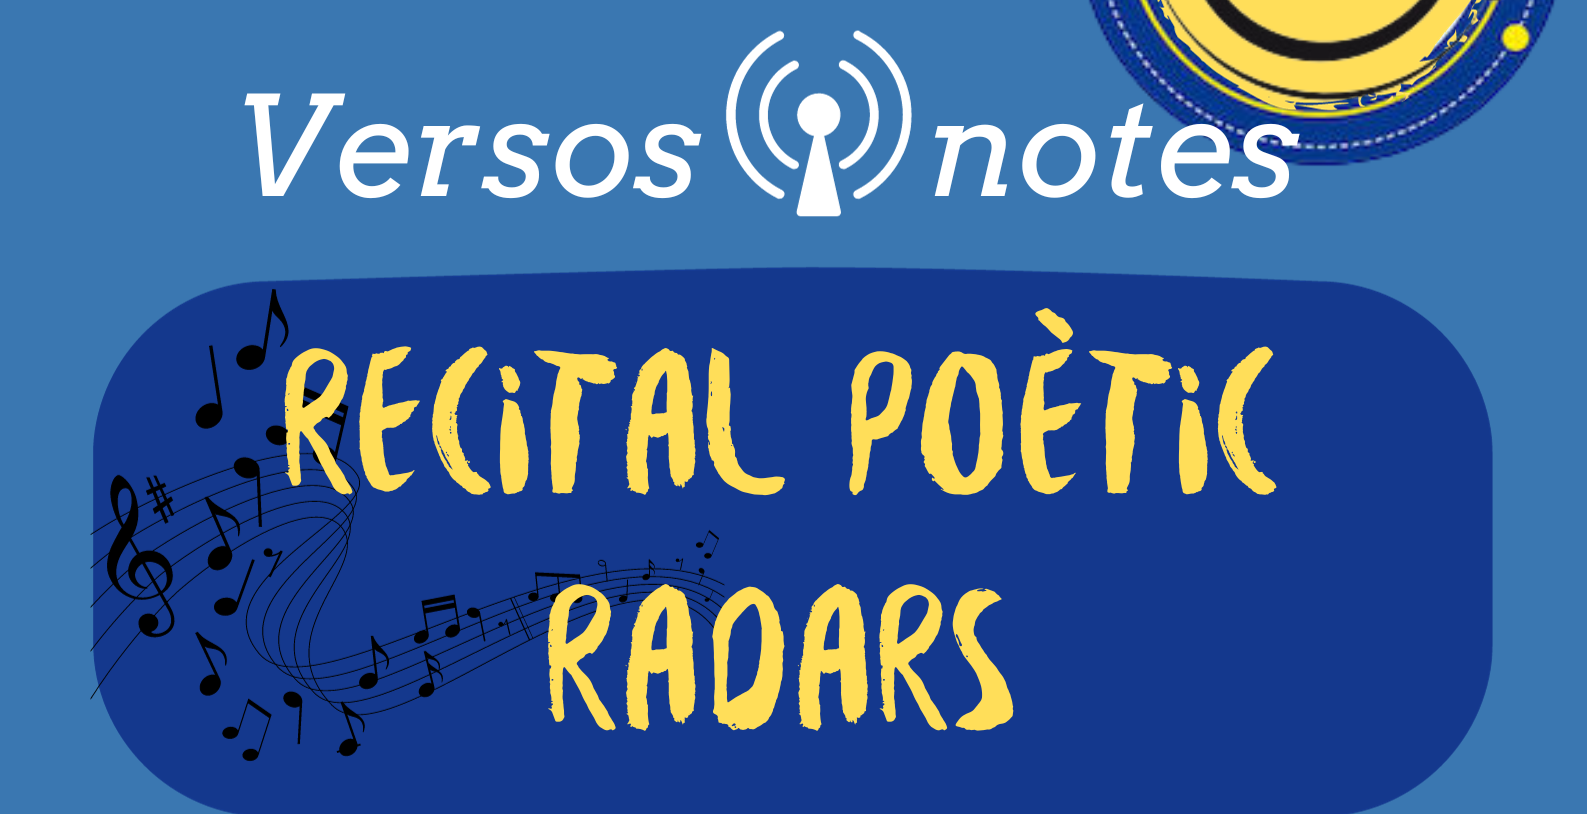 Versos i notes: recital poètic de Radars